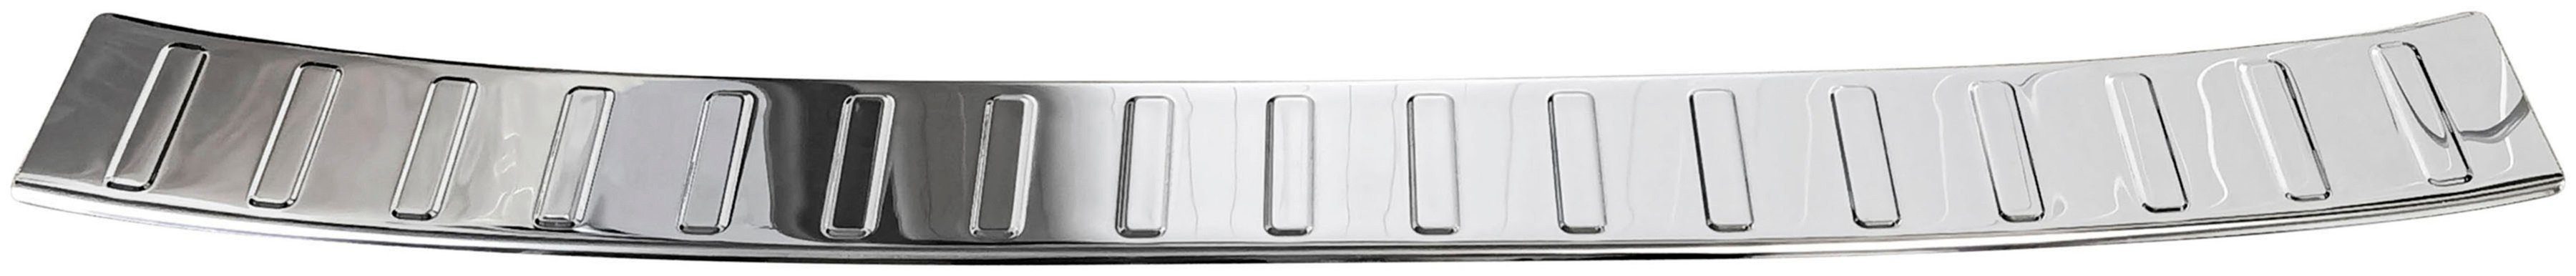 RECAMBO 356, FIAT Edelstahl TIPO 2015, Typ Ladekantenschutz, für Zubehör KOMBI, mit Abkantung chrom poliert,